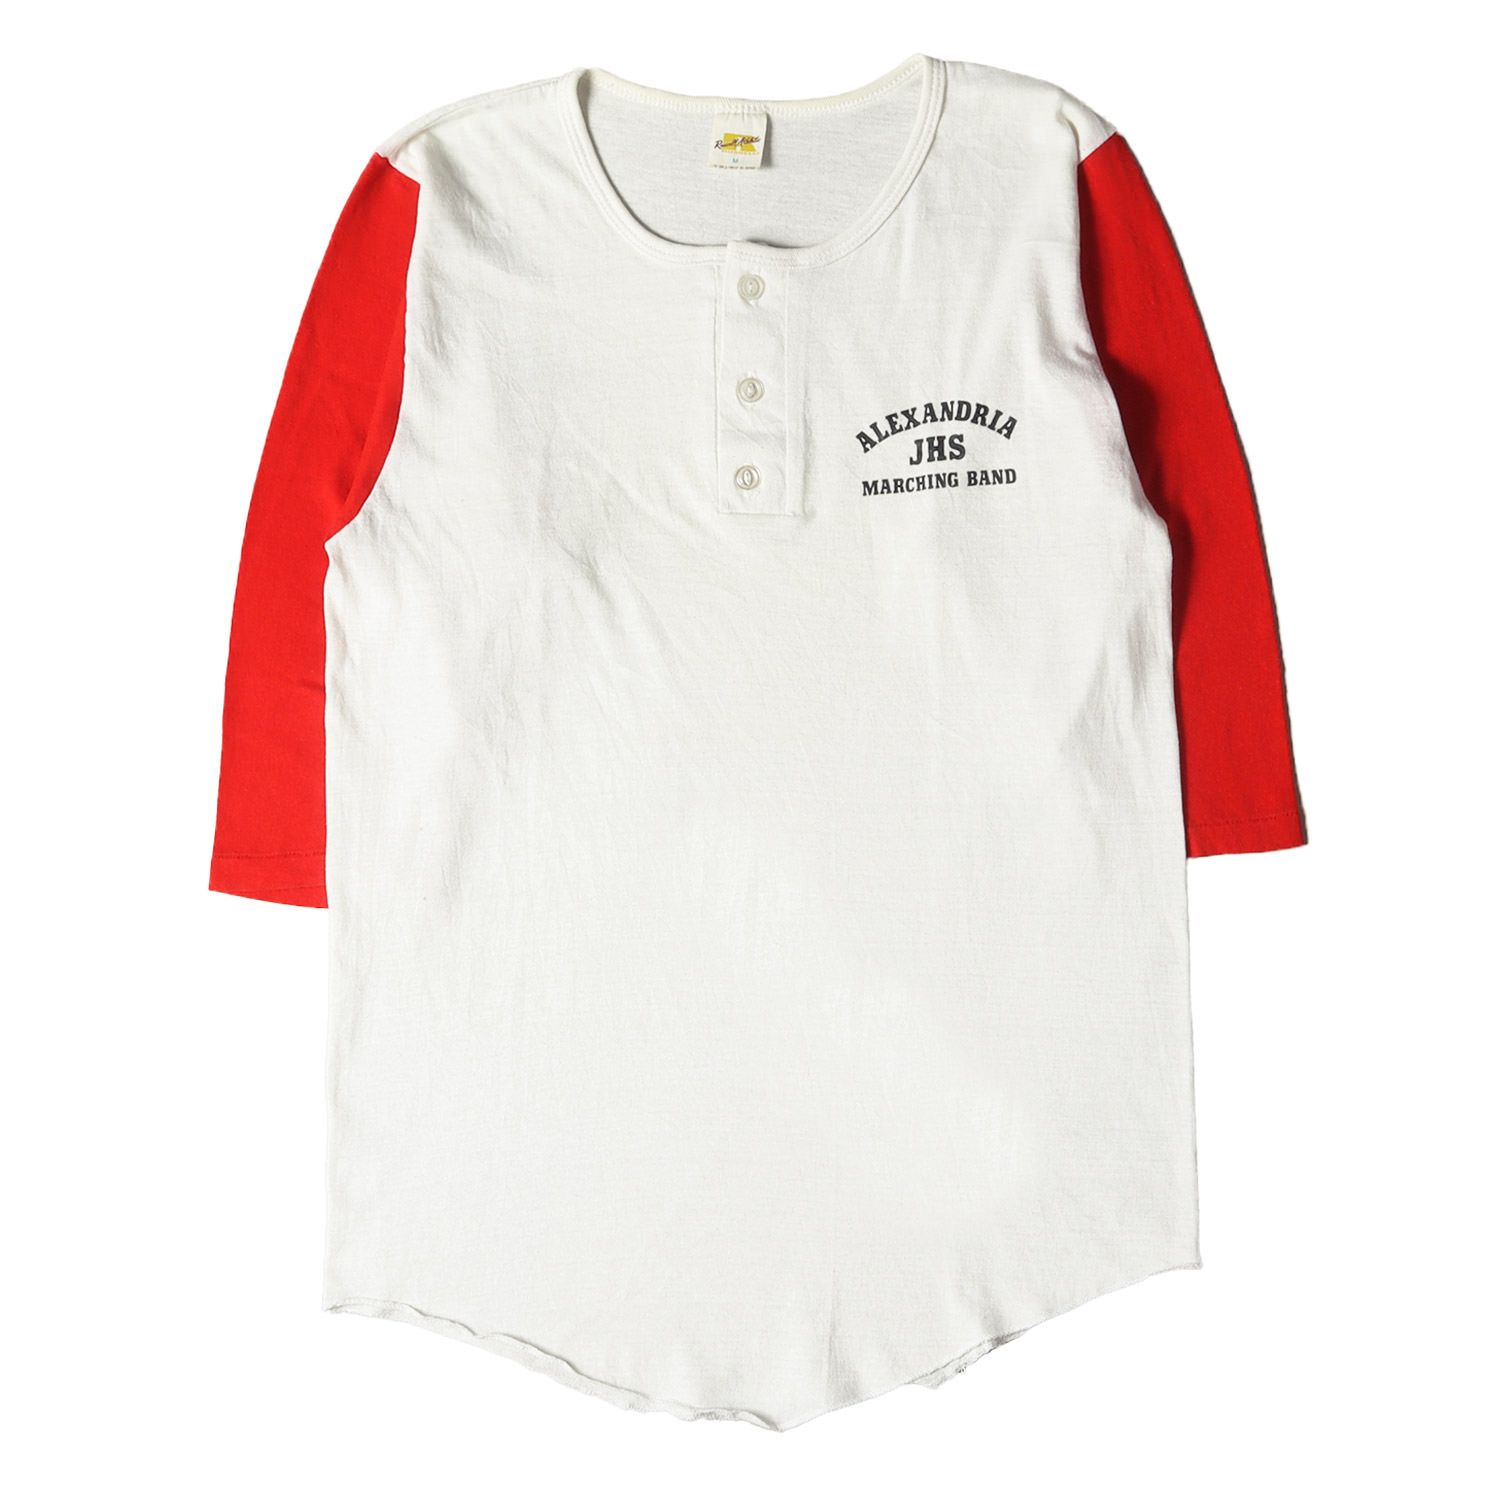 Russell ラッセル Tシャツ サイズ:M 70s 金タグ ヘンリーネック 7分袖 プリント Tシャツ ホワイト レッド 赤白 トップス  カットソー 長袖 70年代 古着 ヴィンテージ